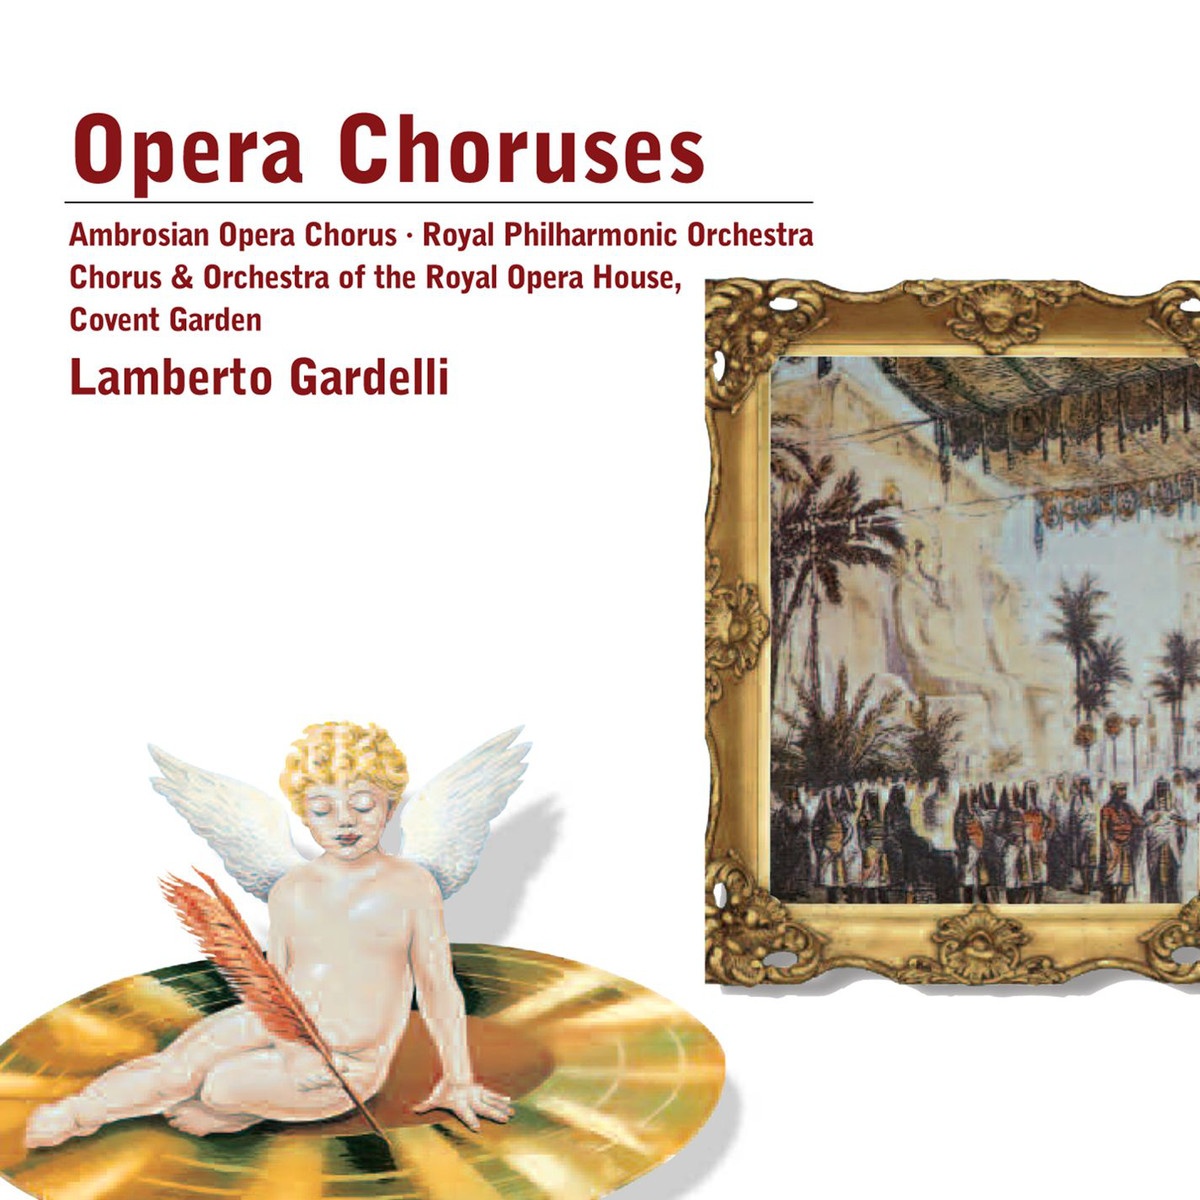 Lucia di Lammermoor (1987 Digital Remaster): Per te d'immenso giubilo (Act 2)